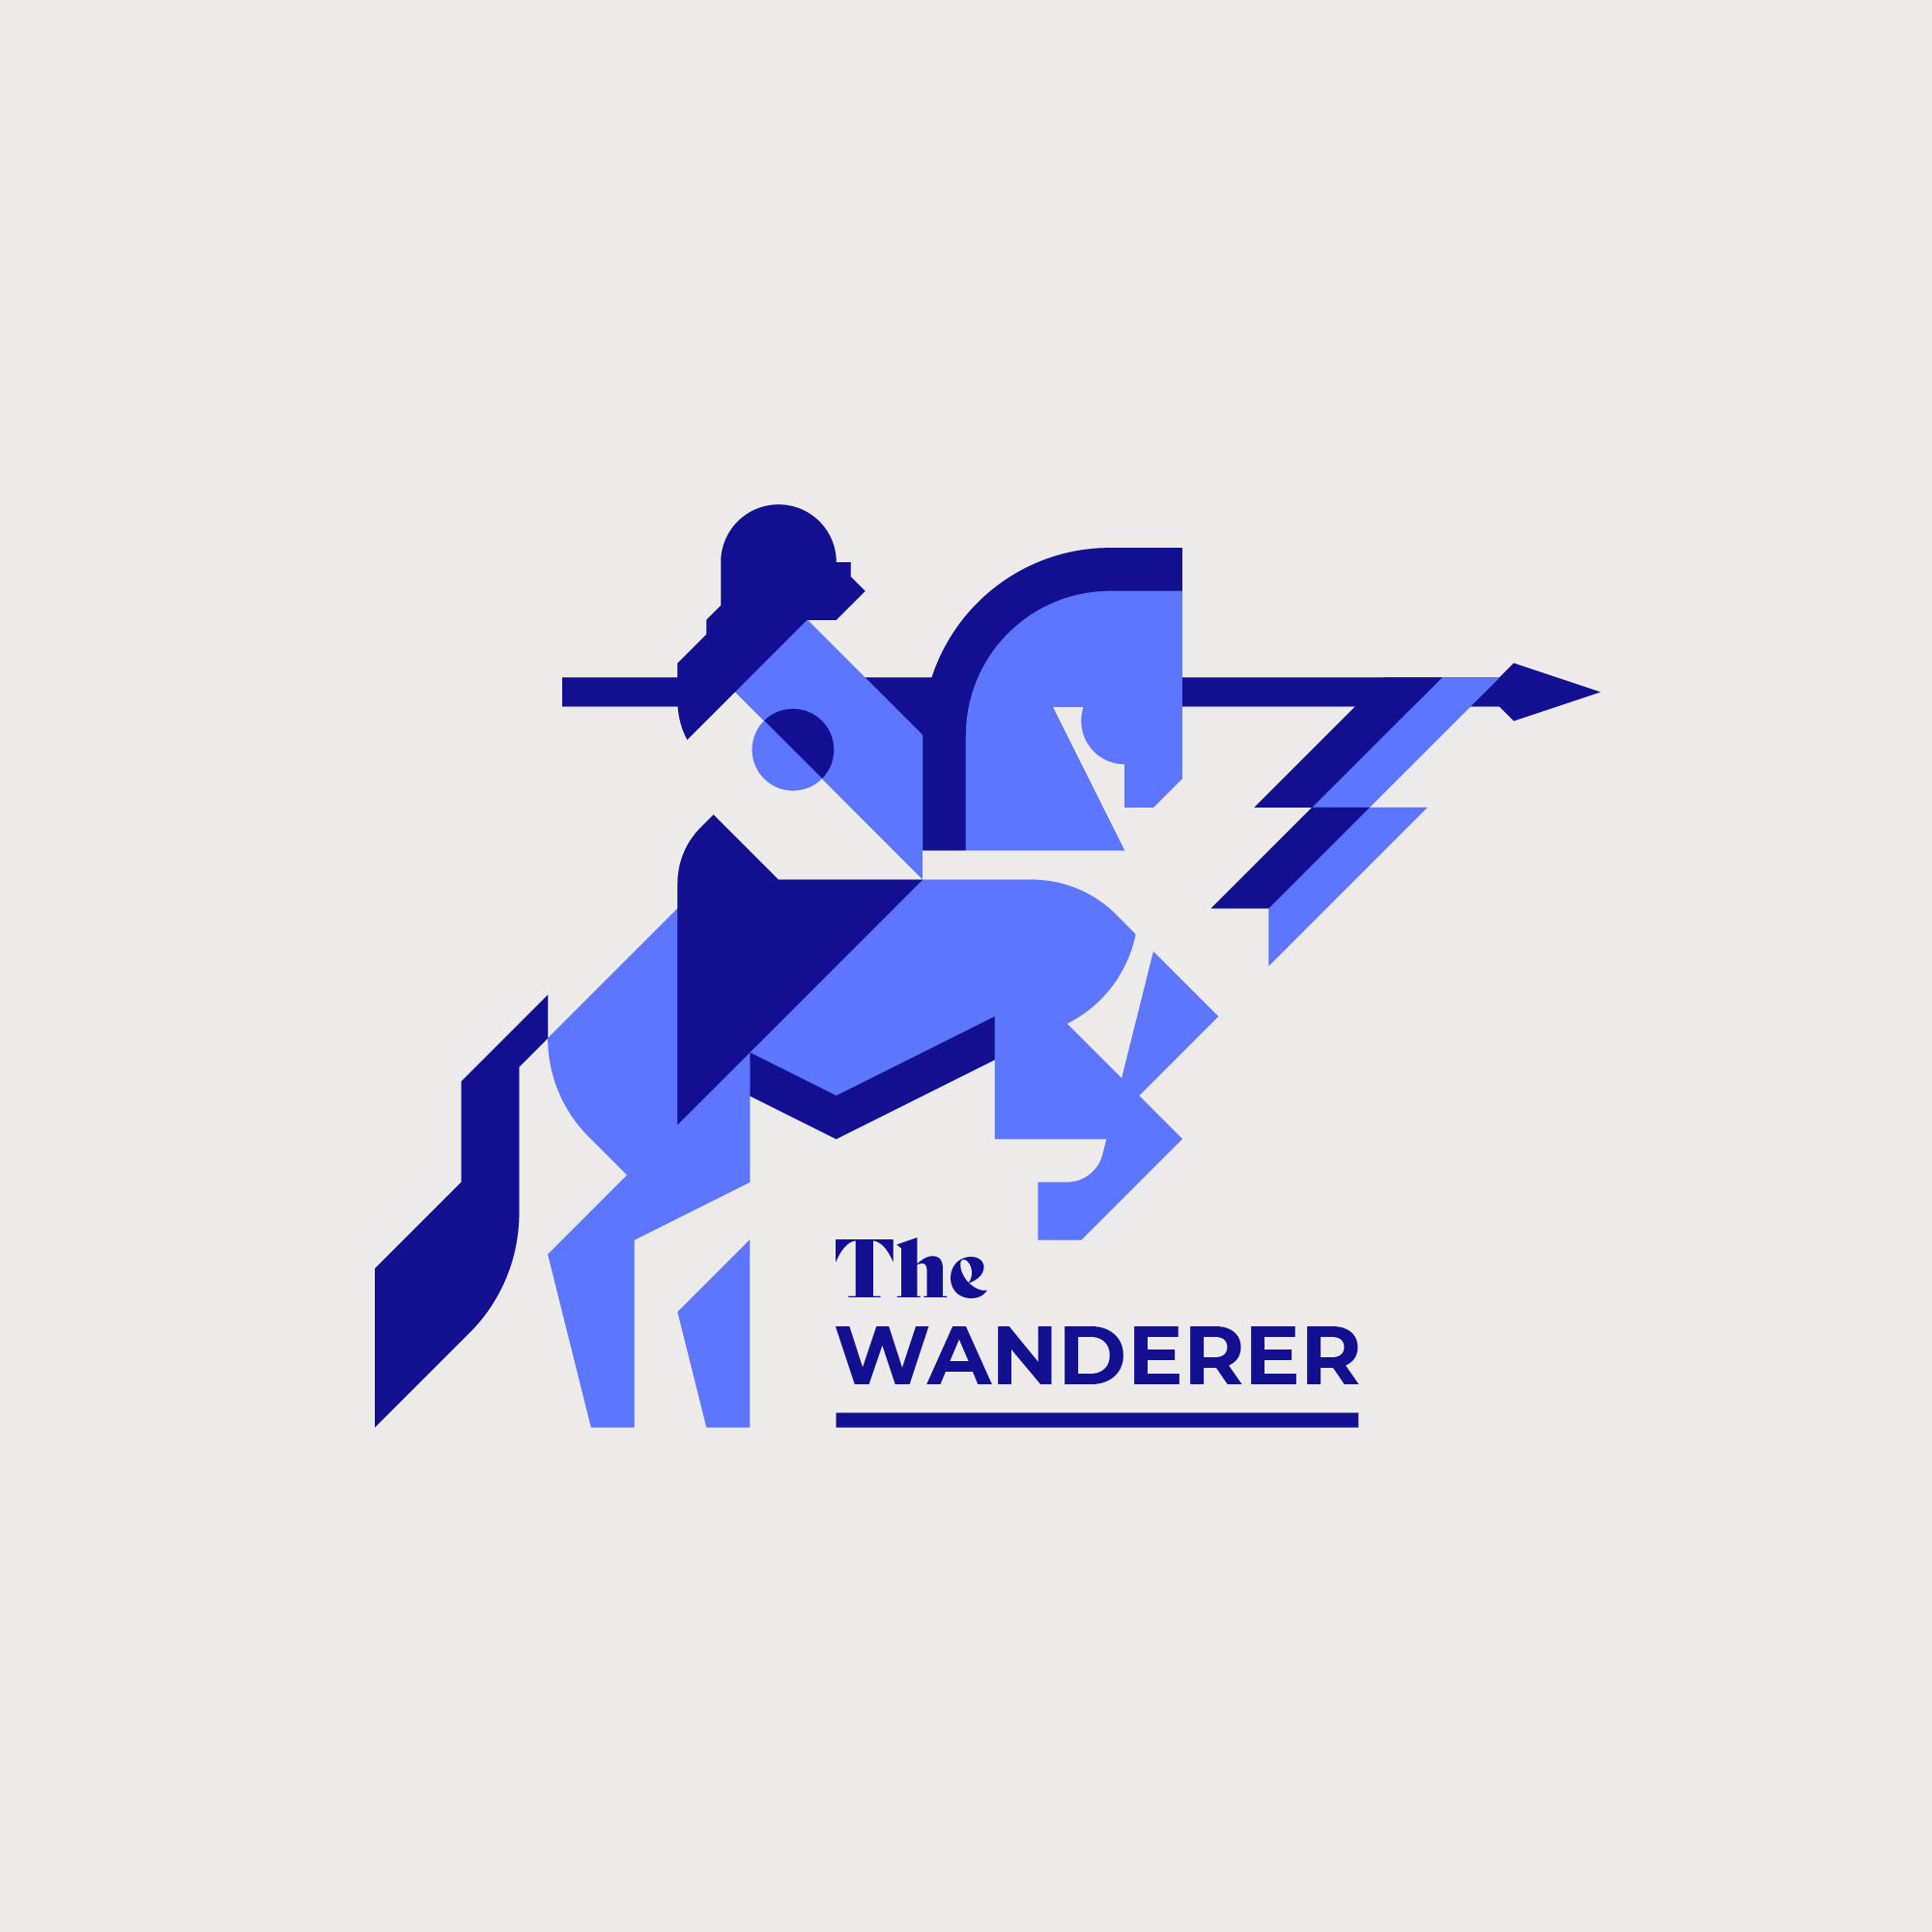 Logo de 'The Wanderer' - Chevalier errant, cheval, cavalier.